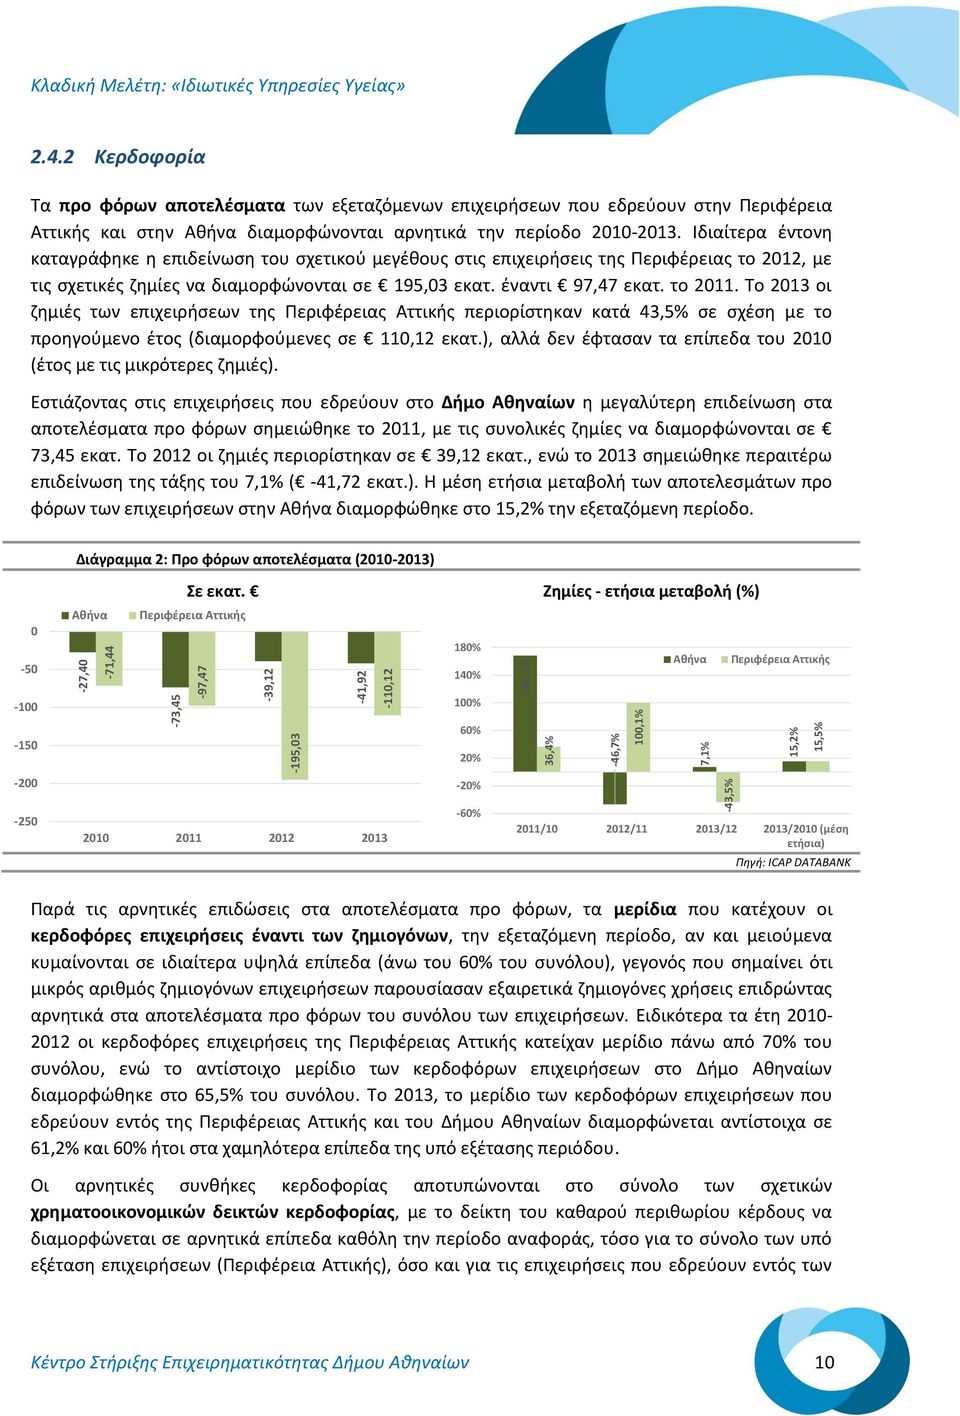 Το 213 οι ζημιές των επιχειρήσεων της Περιφέρειας Αττικής περιορίστηκαν κατά 43,5% σε σχέση με το προηγούμενο έτος (διαμορφούμενες σε 11,12 εκατ.